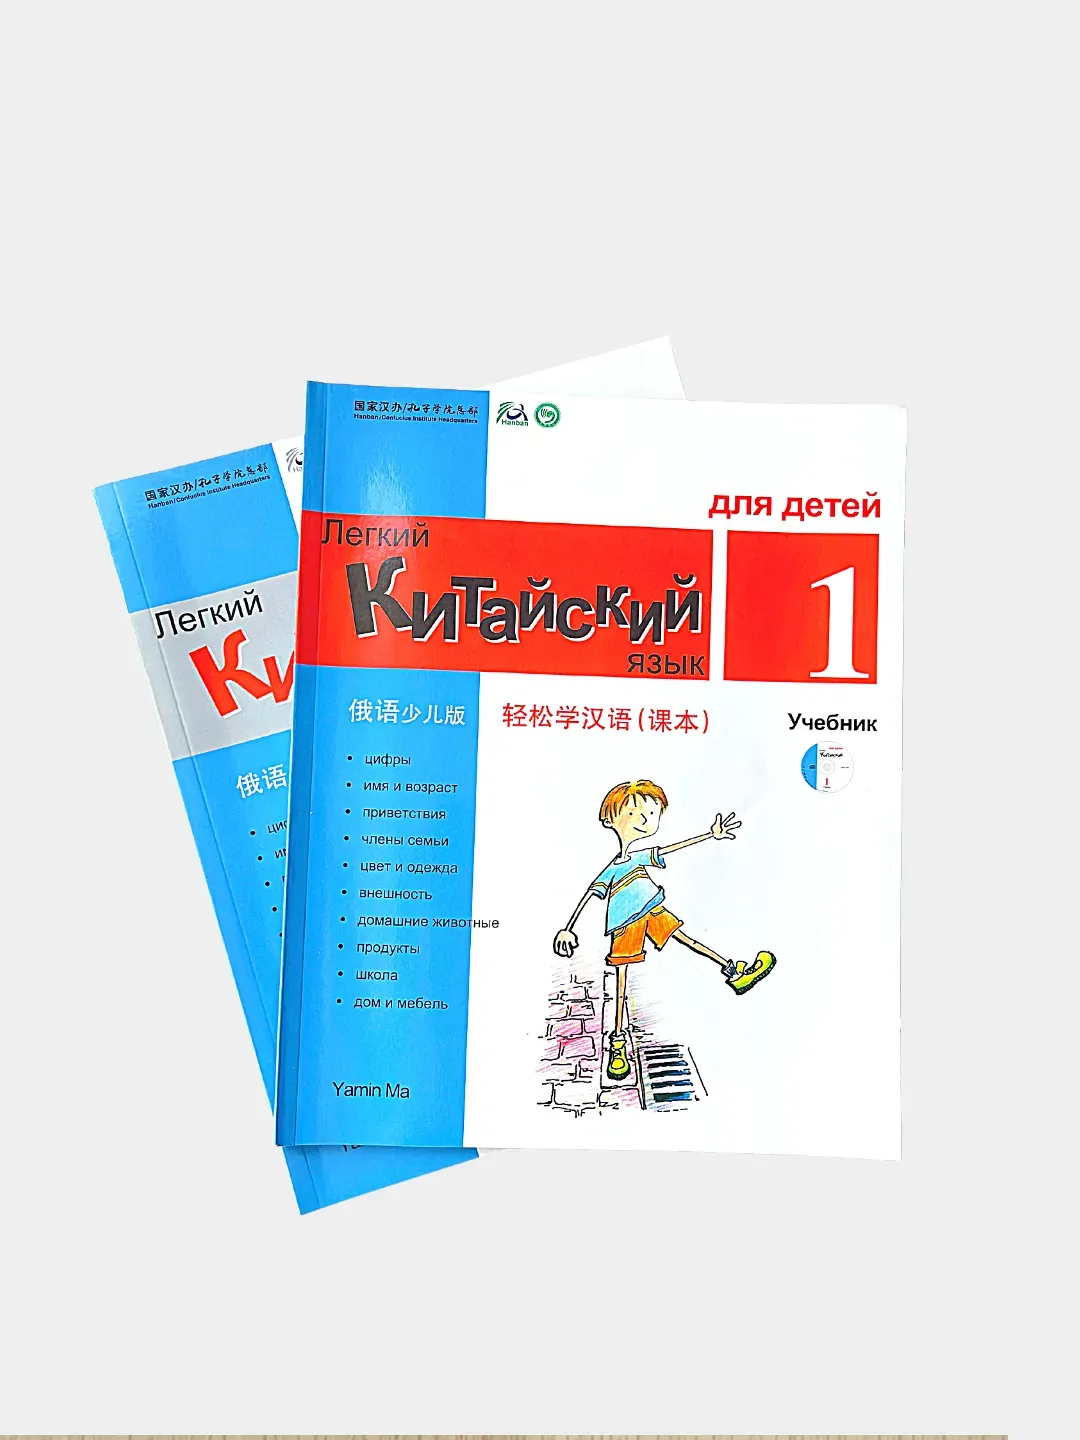 Легкий китайский язык для детей учебник. Легкий китайский учебник 1.